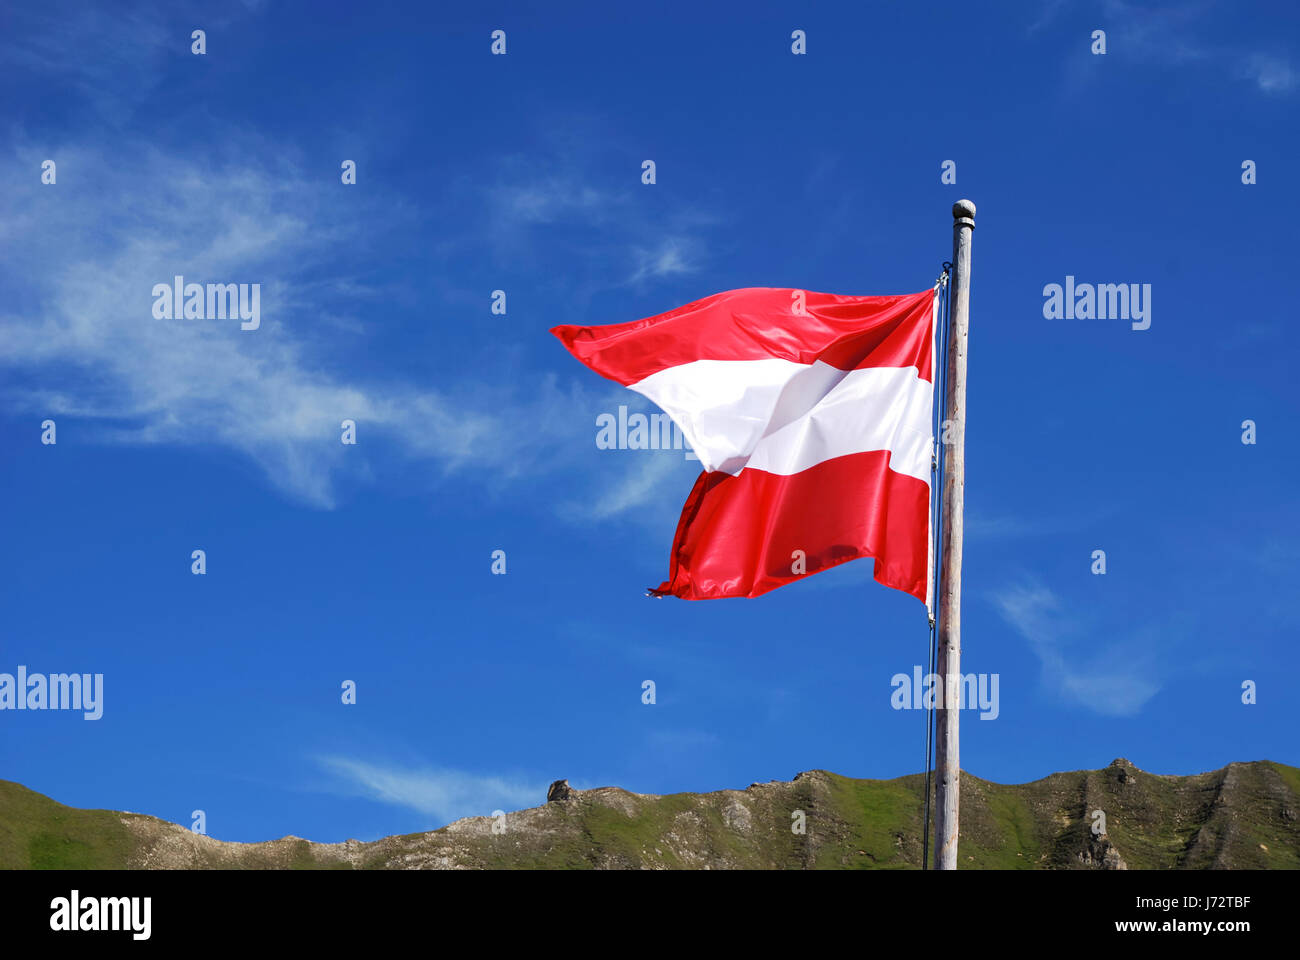 Austria bandiera nazionale flagstaff pennone firmamento cielo pittogramma Foto Stock